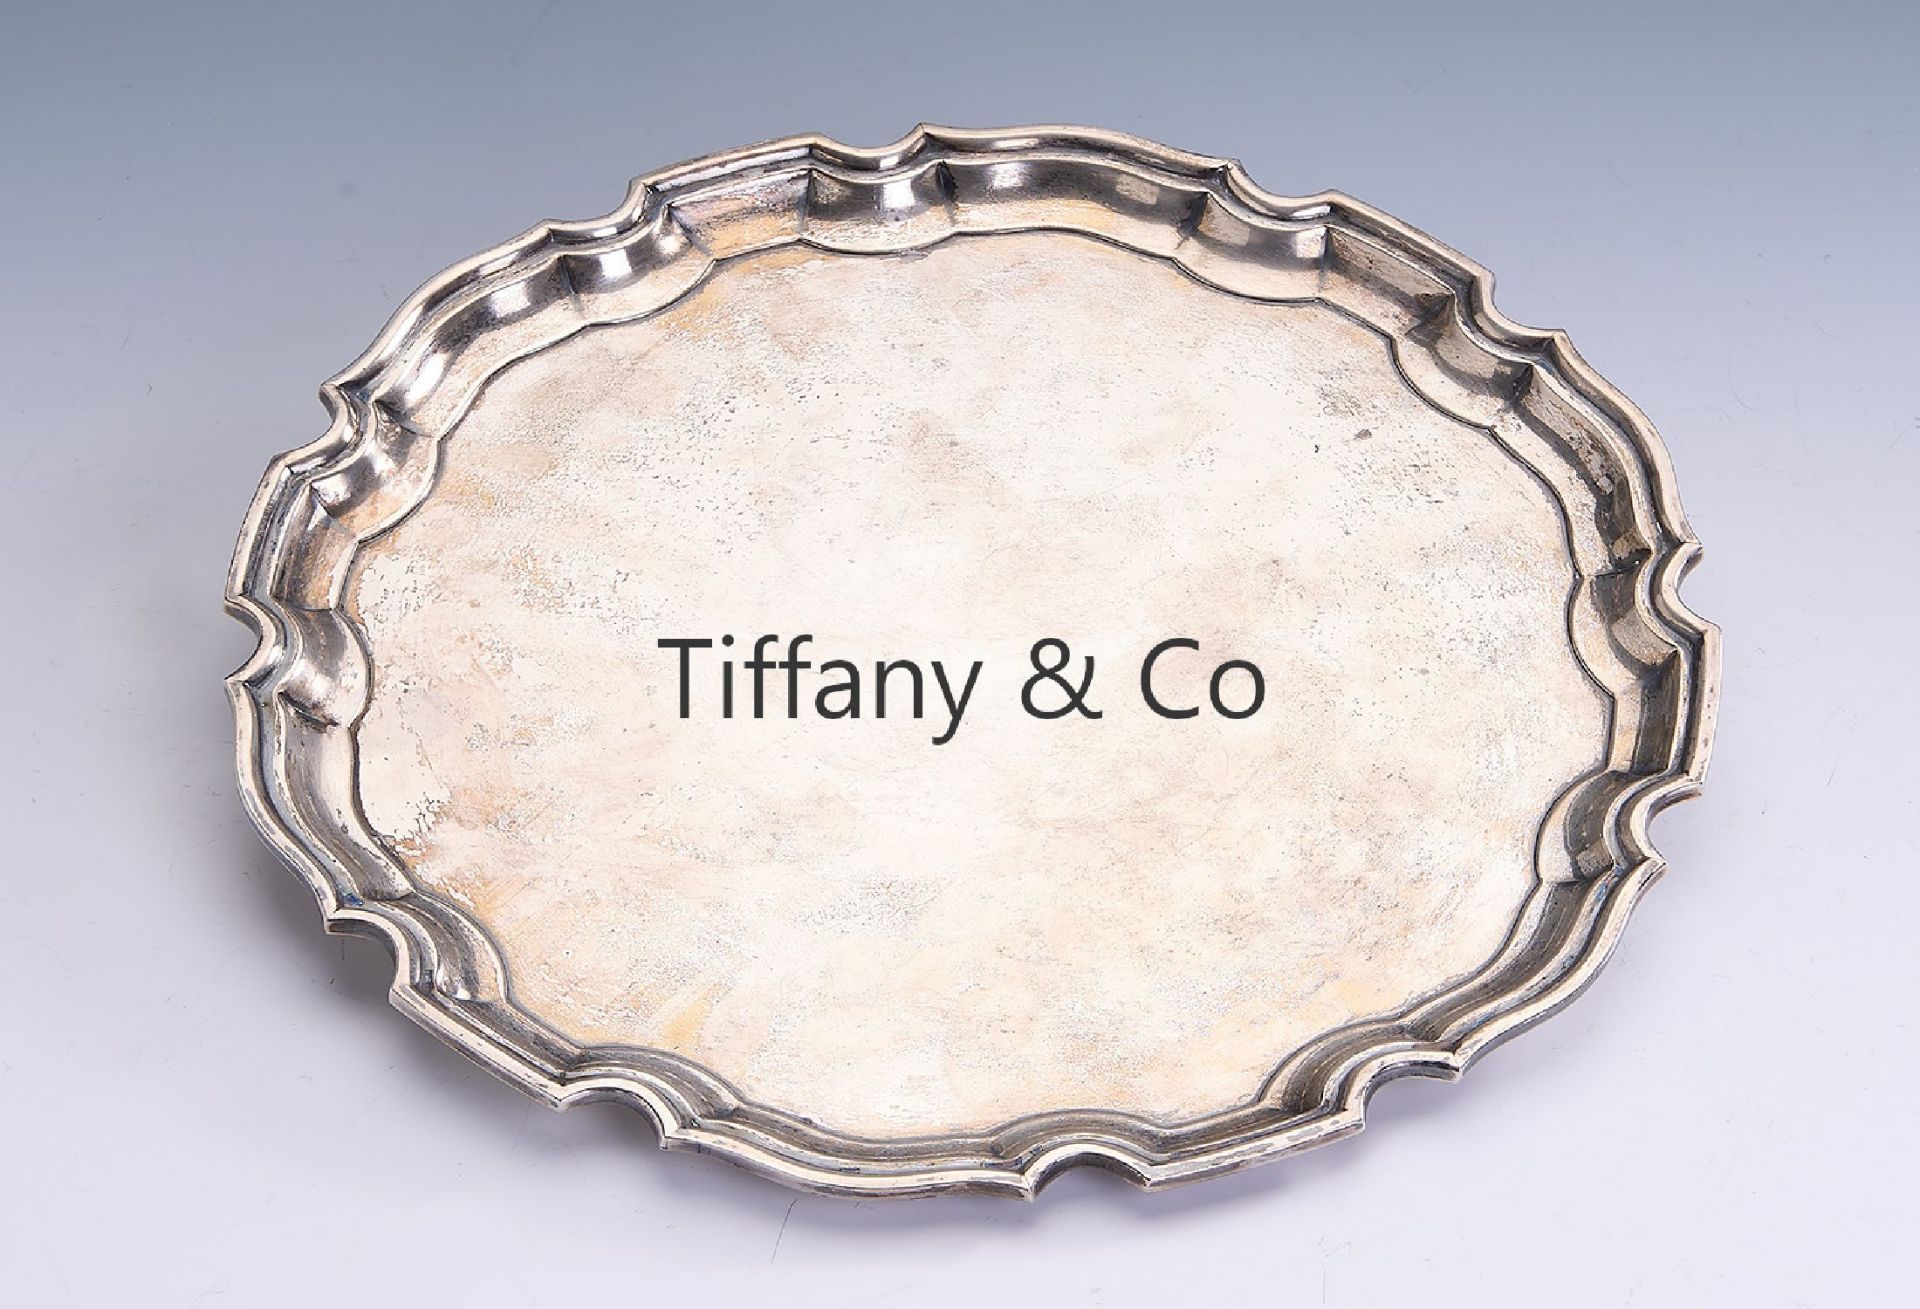 TIFFANY & CO Teller, 925er Silber, USA 1902-1907,